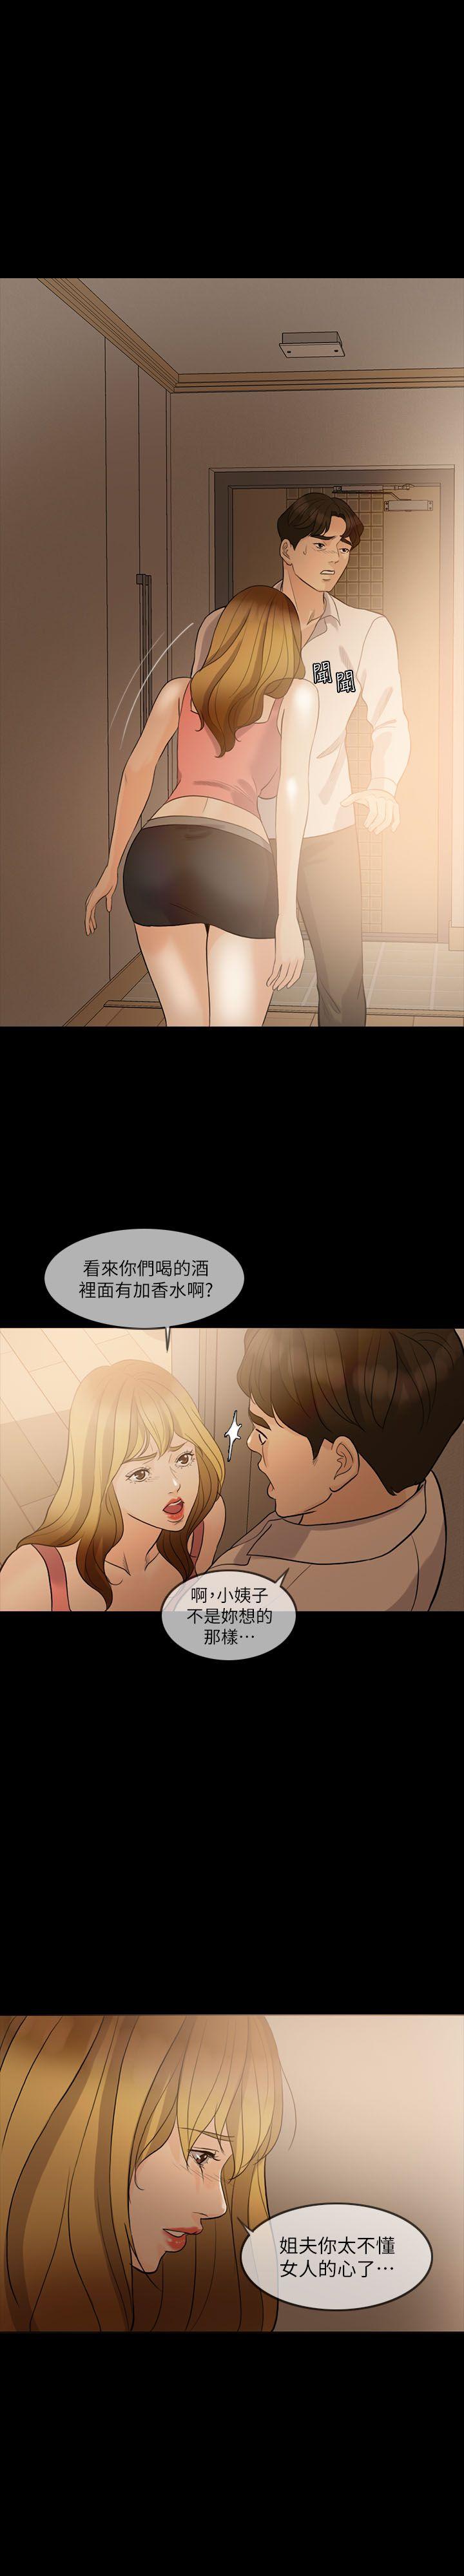 韩国污漫画 失控的愛 第9话 1